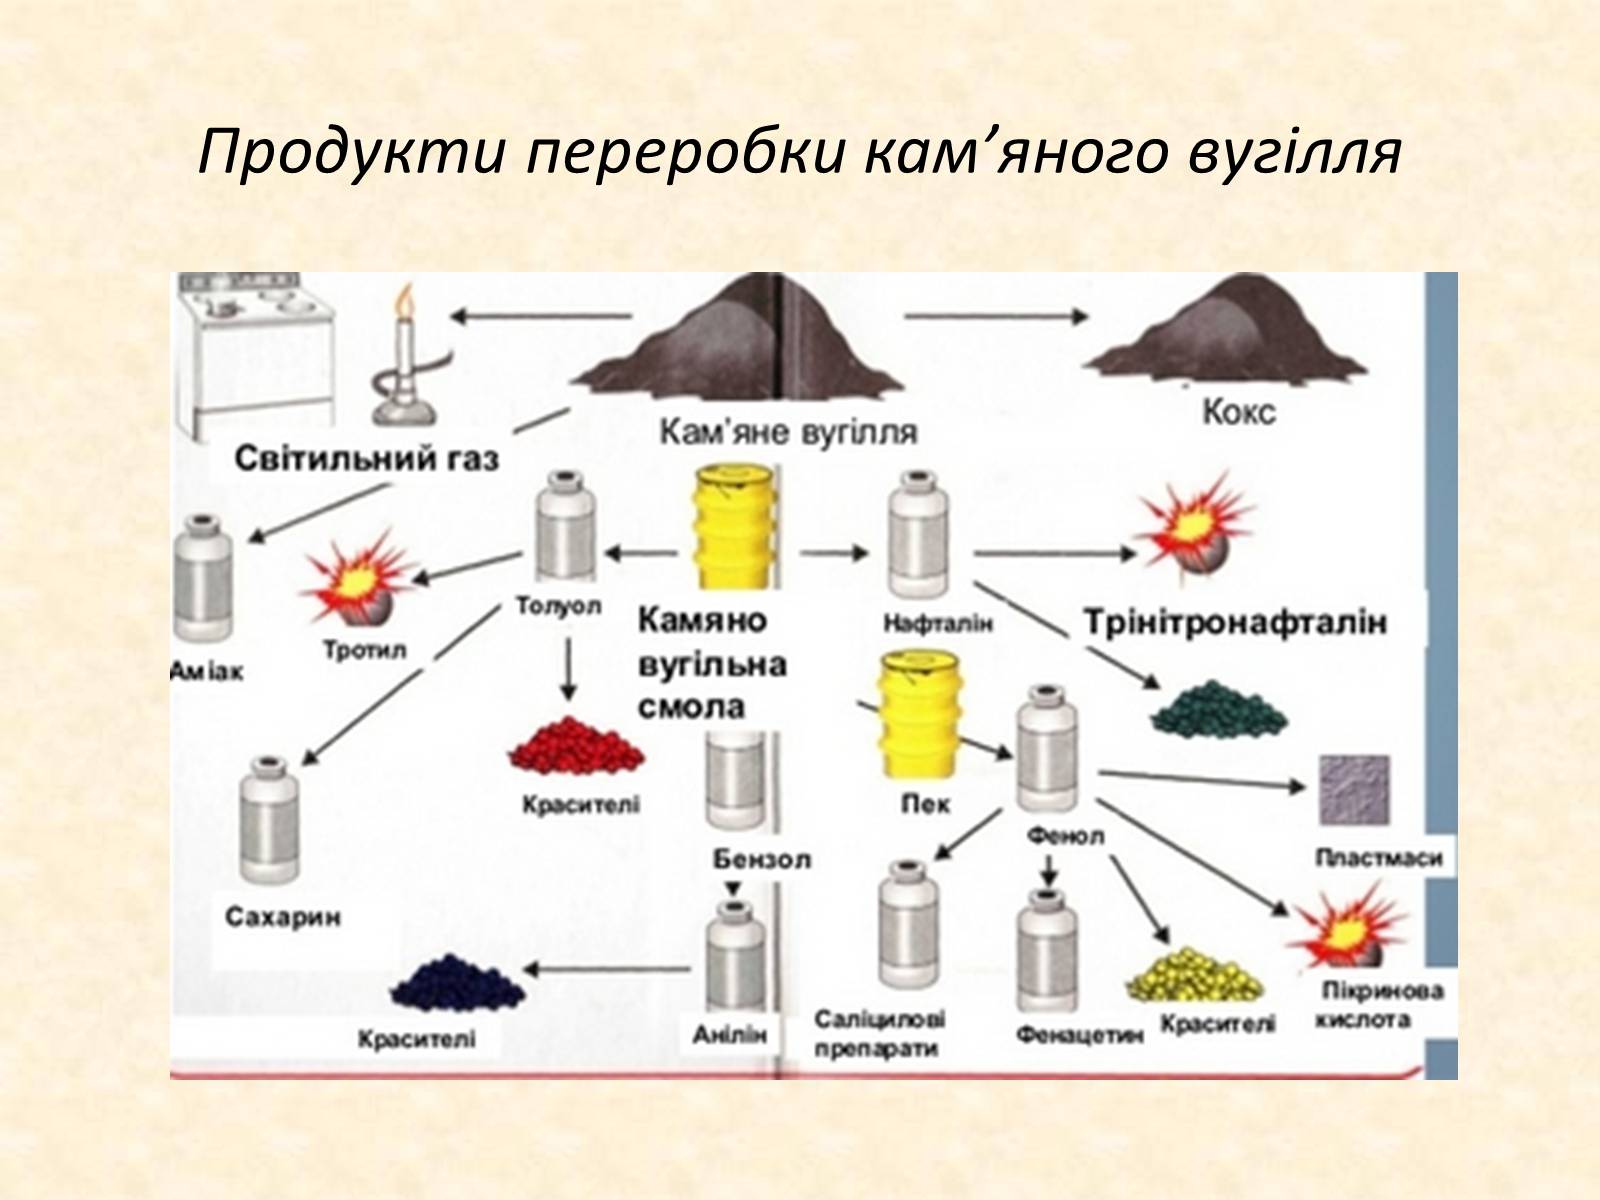 Природные источники нефть каменный уголь. Продукты переработки каменного угля таблица. Схема переработки каменного угля. Продукты переработки каменного угля схема. Основные продукты переработки каменного угля.